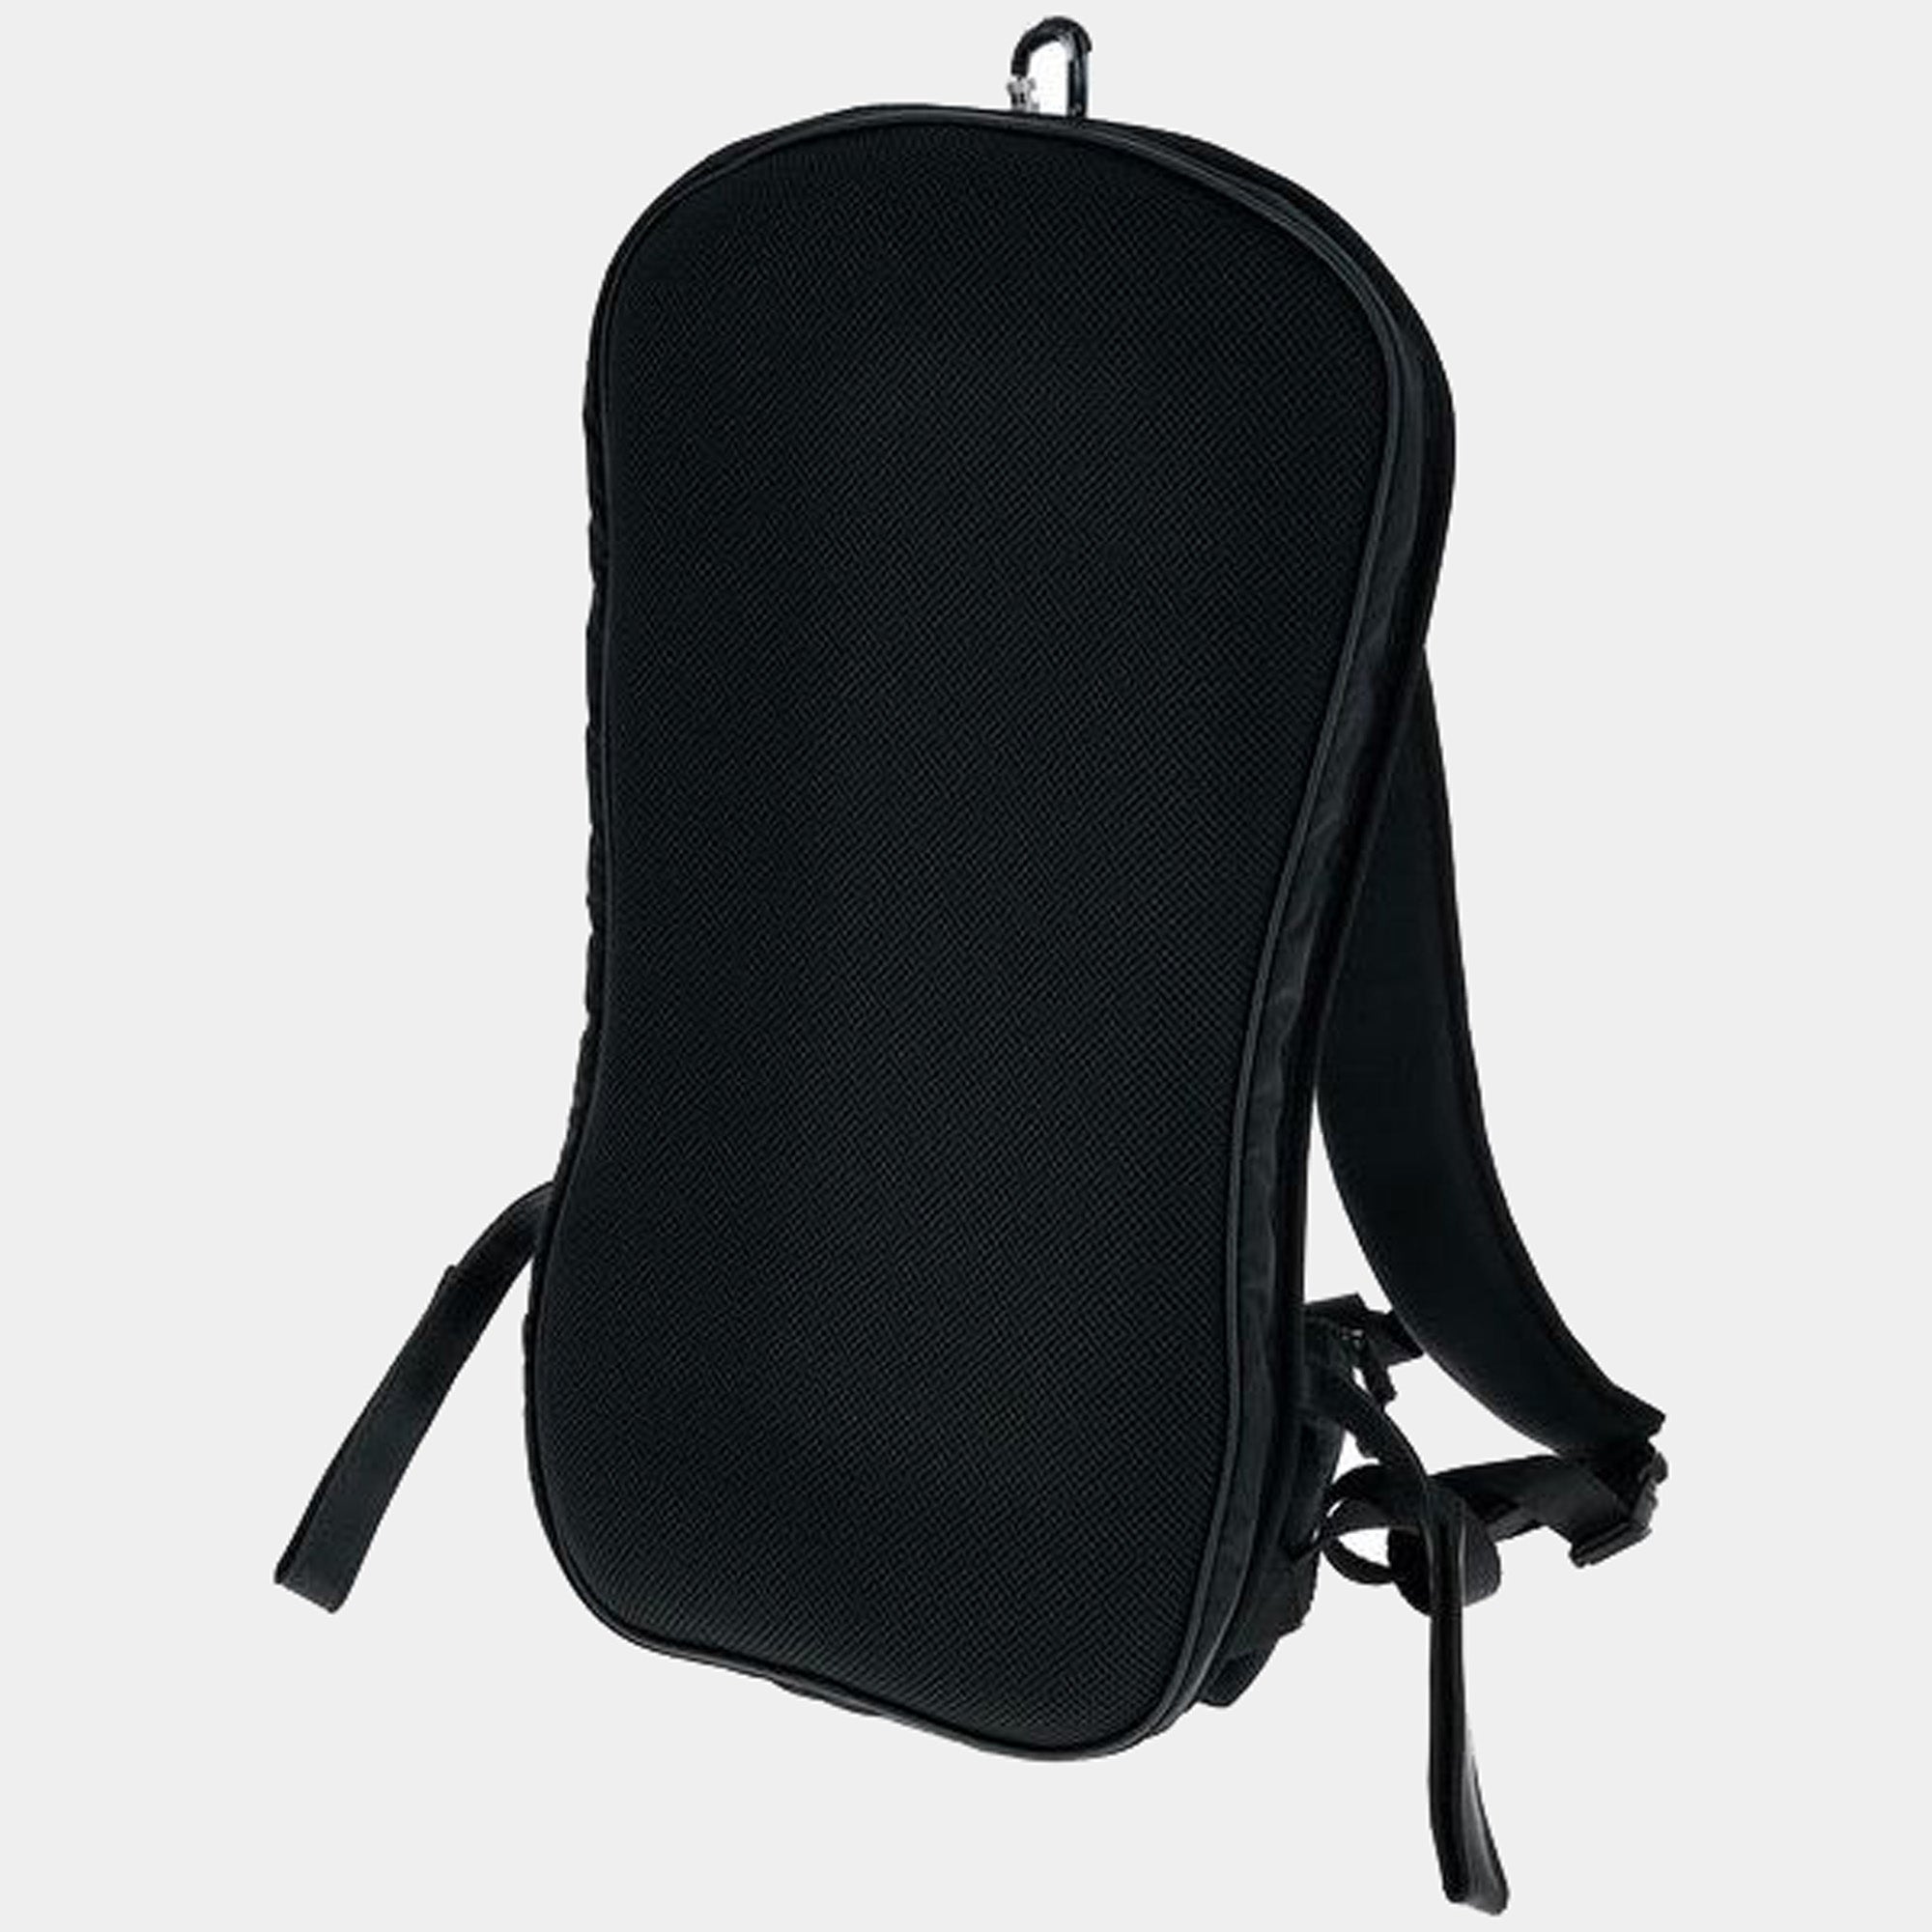 Ergonomic Backpack for Cello Cases